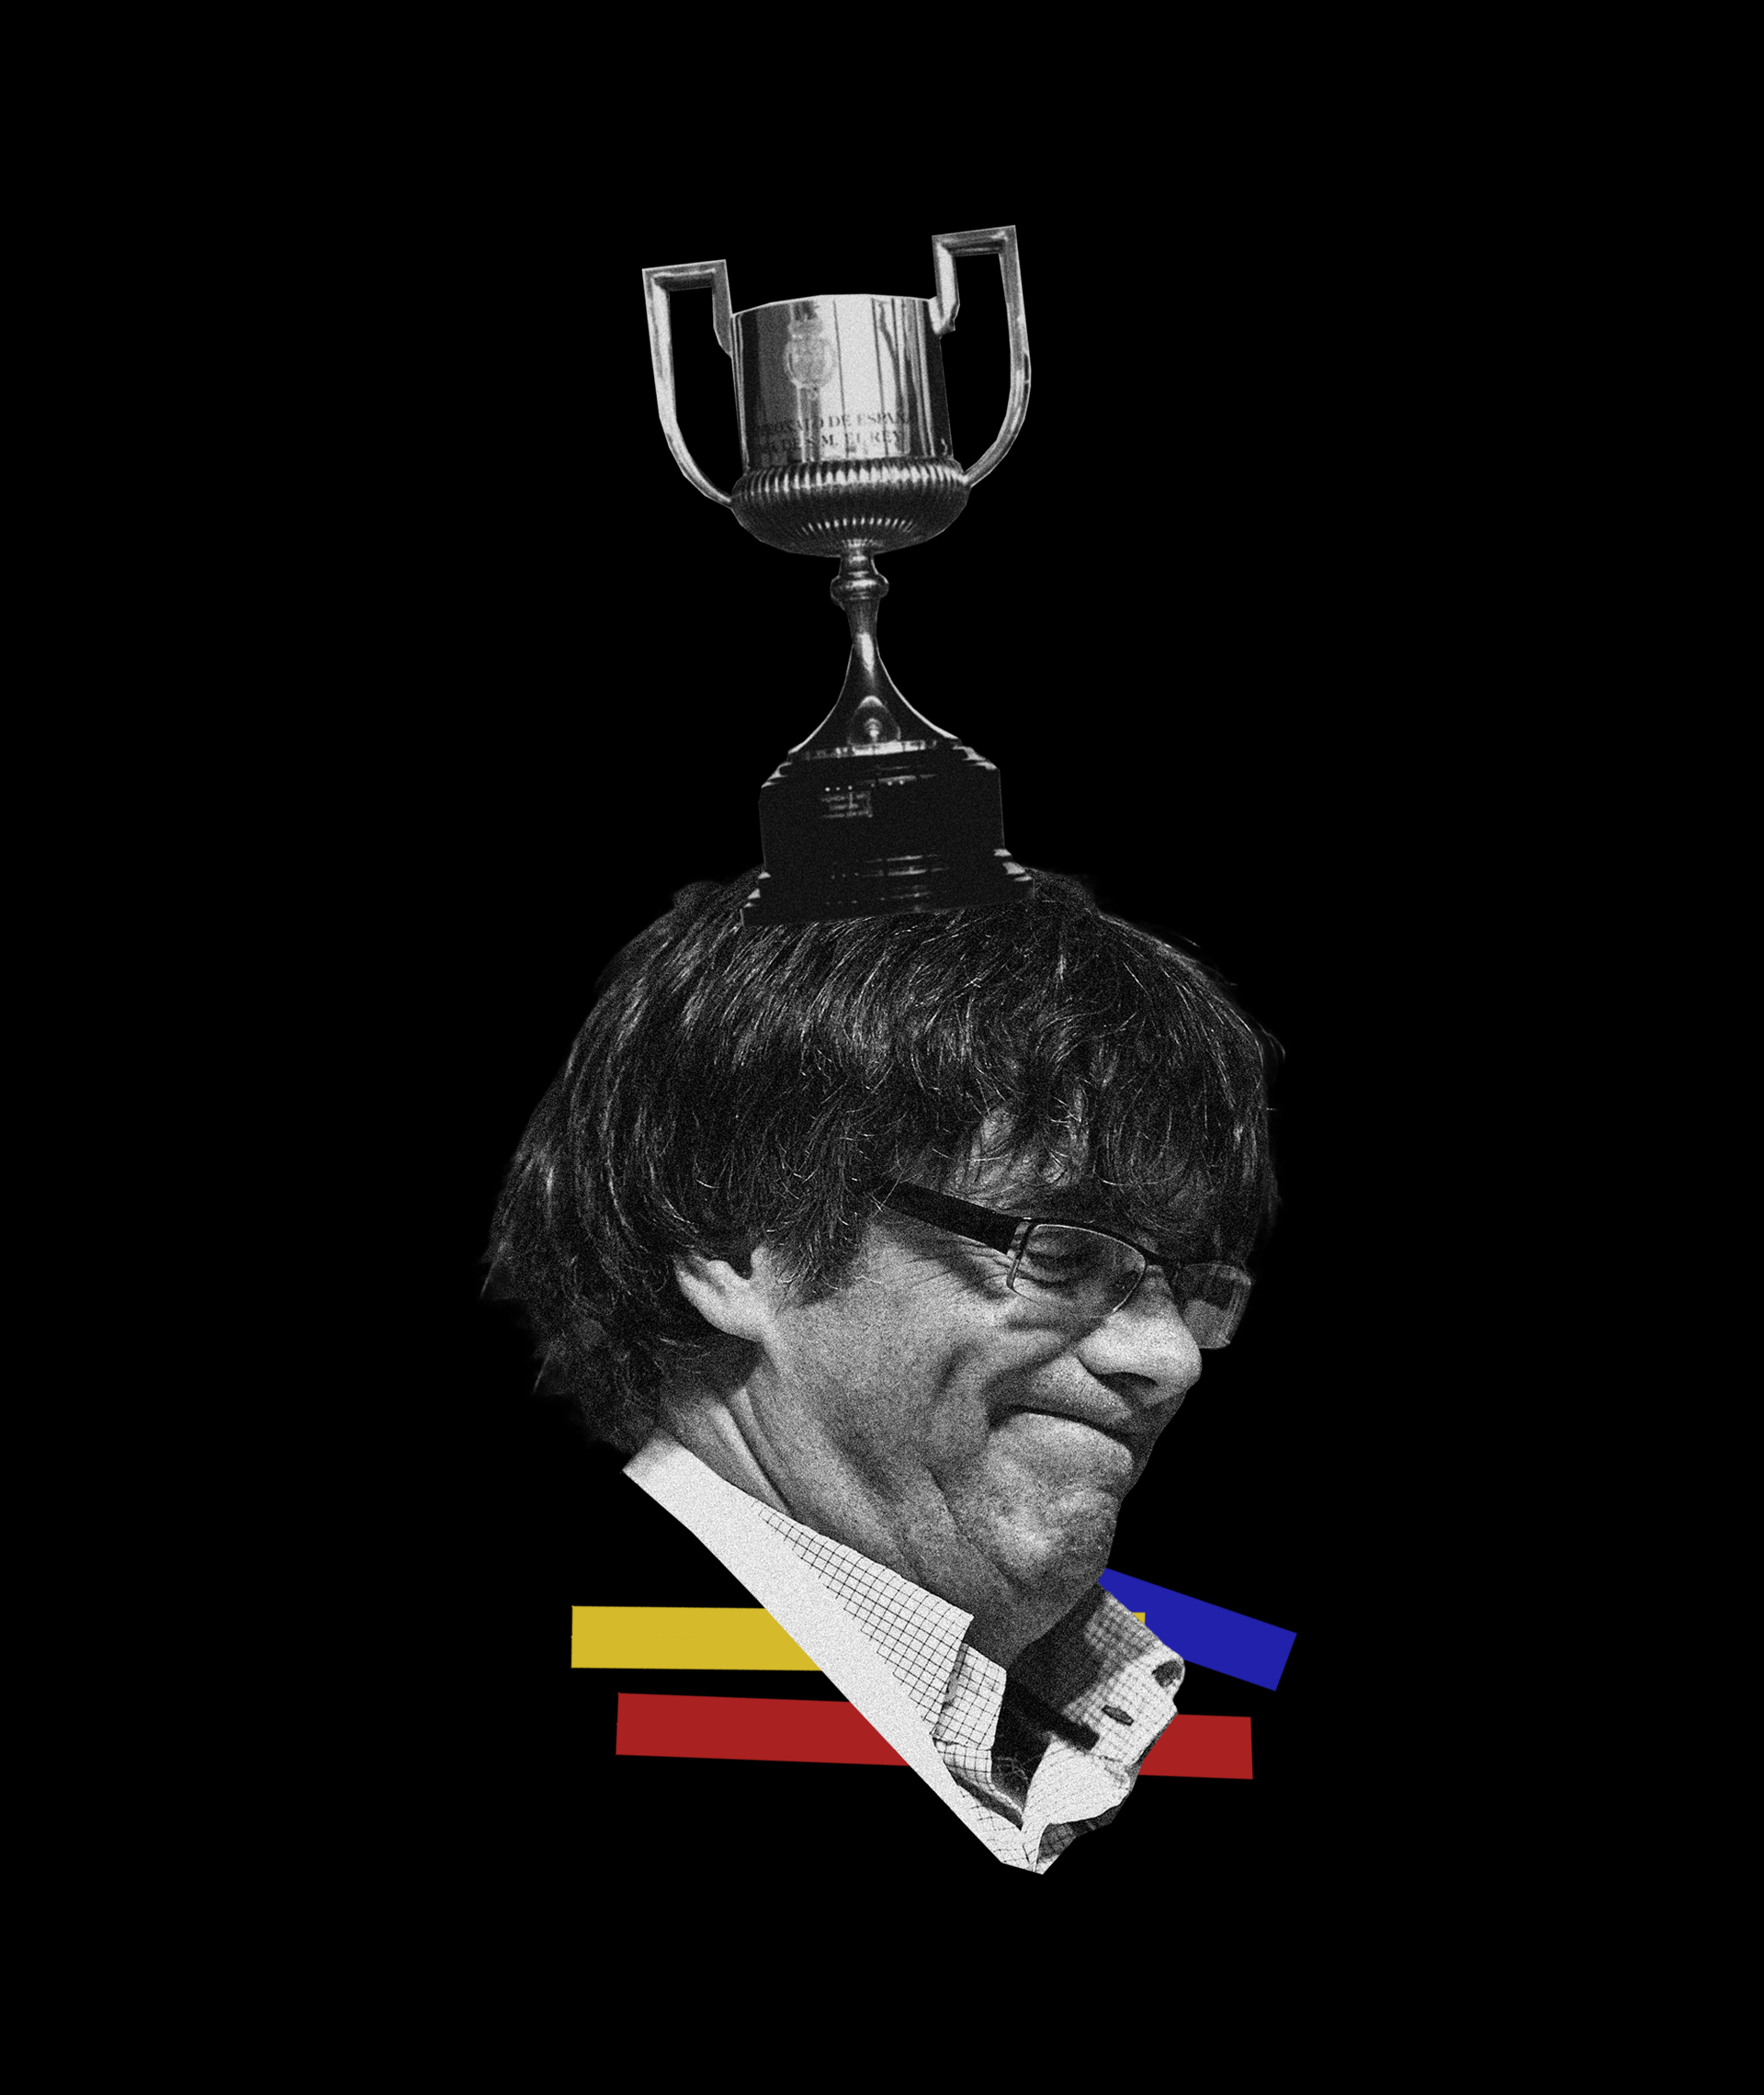 Emisarios de Puigdemont pidieron que le llevaran los trofeos del Barcelona a su 'exilio' en Berlín